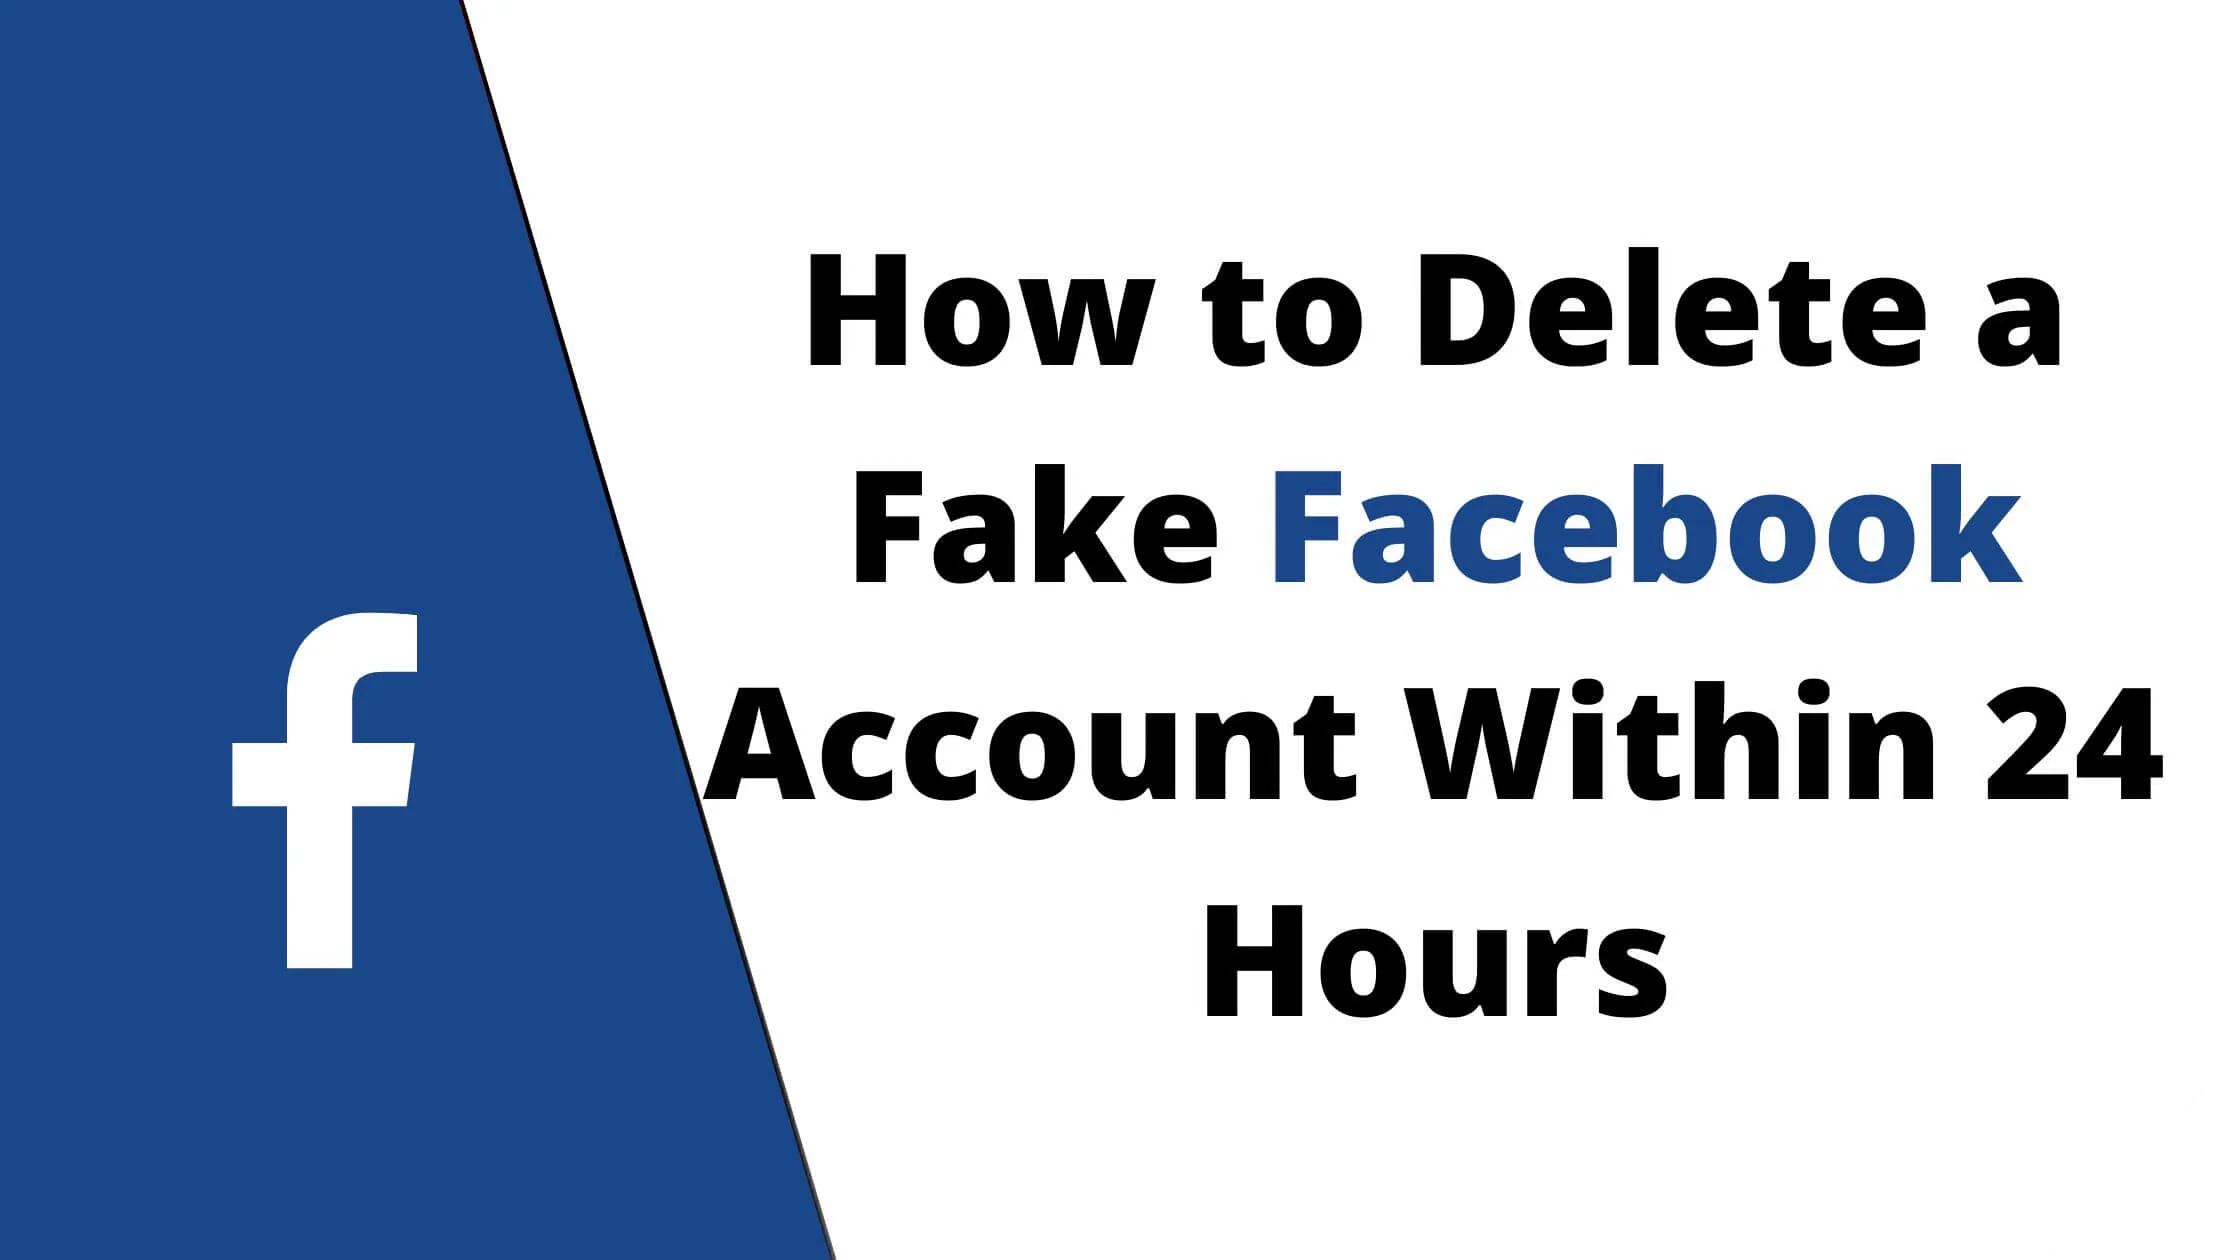 Delete a Fake Facebook Account